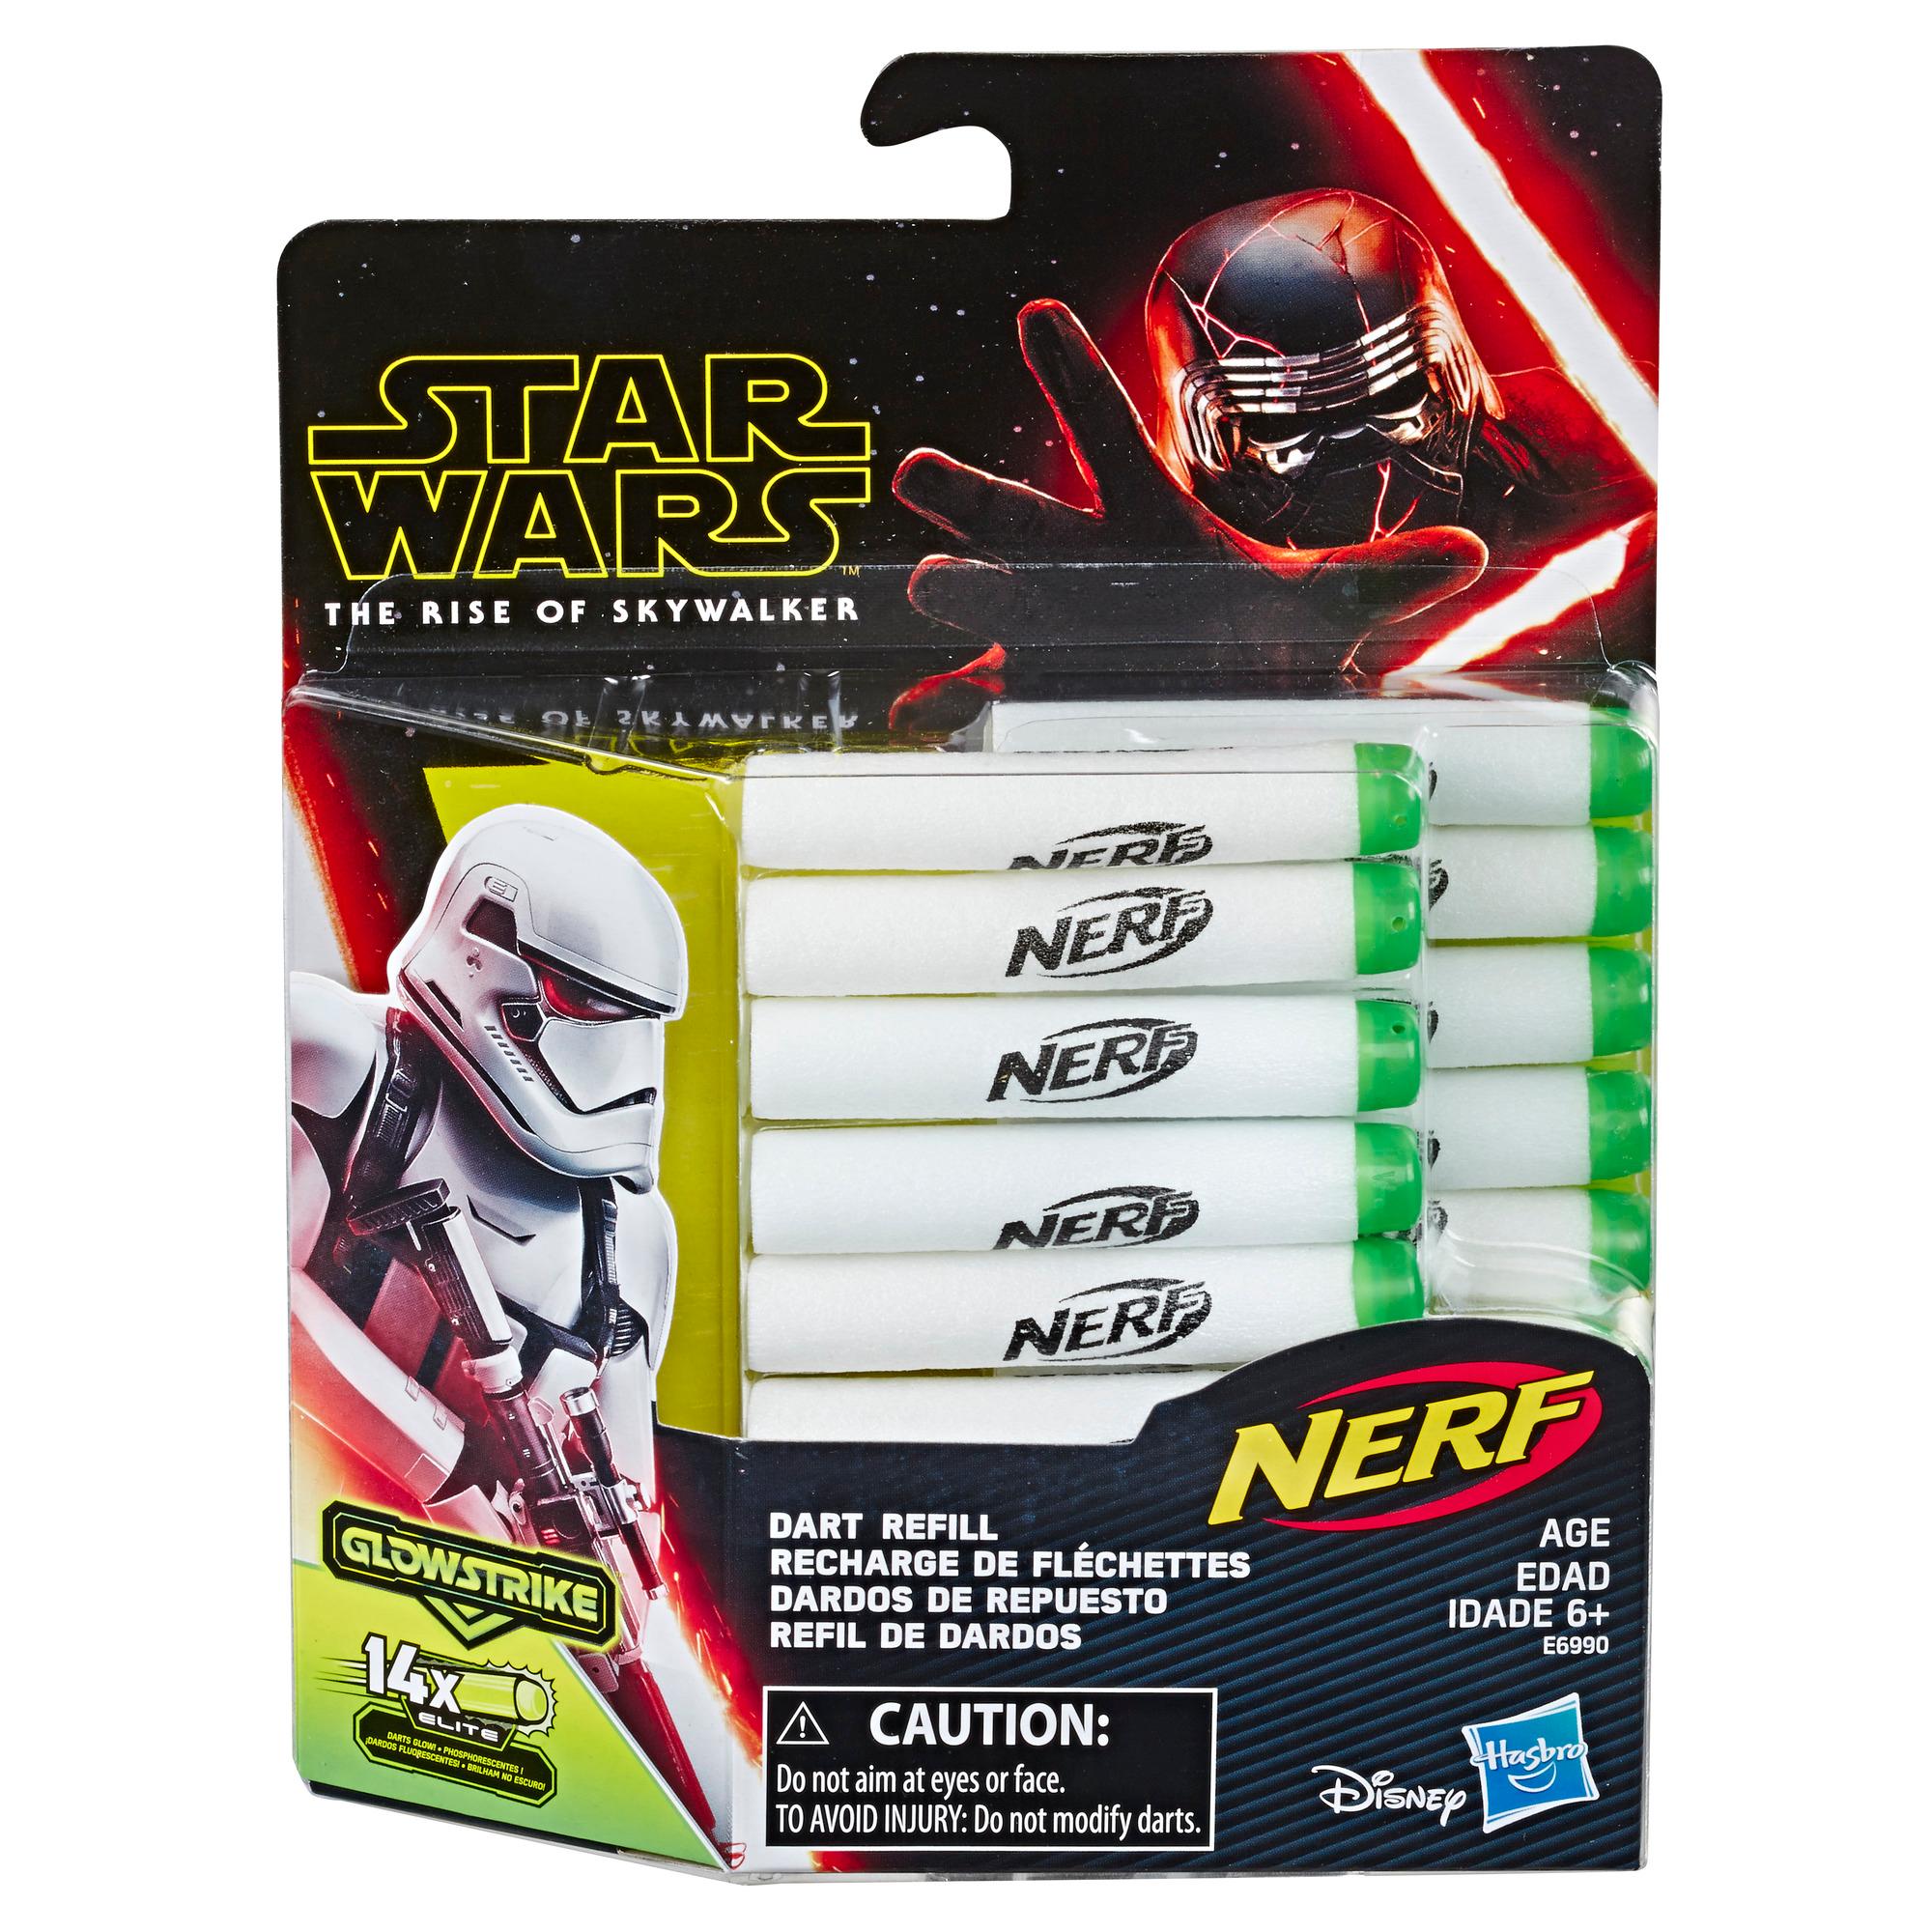 Star Wars Nerf Dart Refill